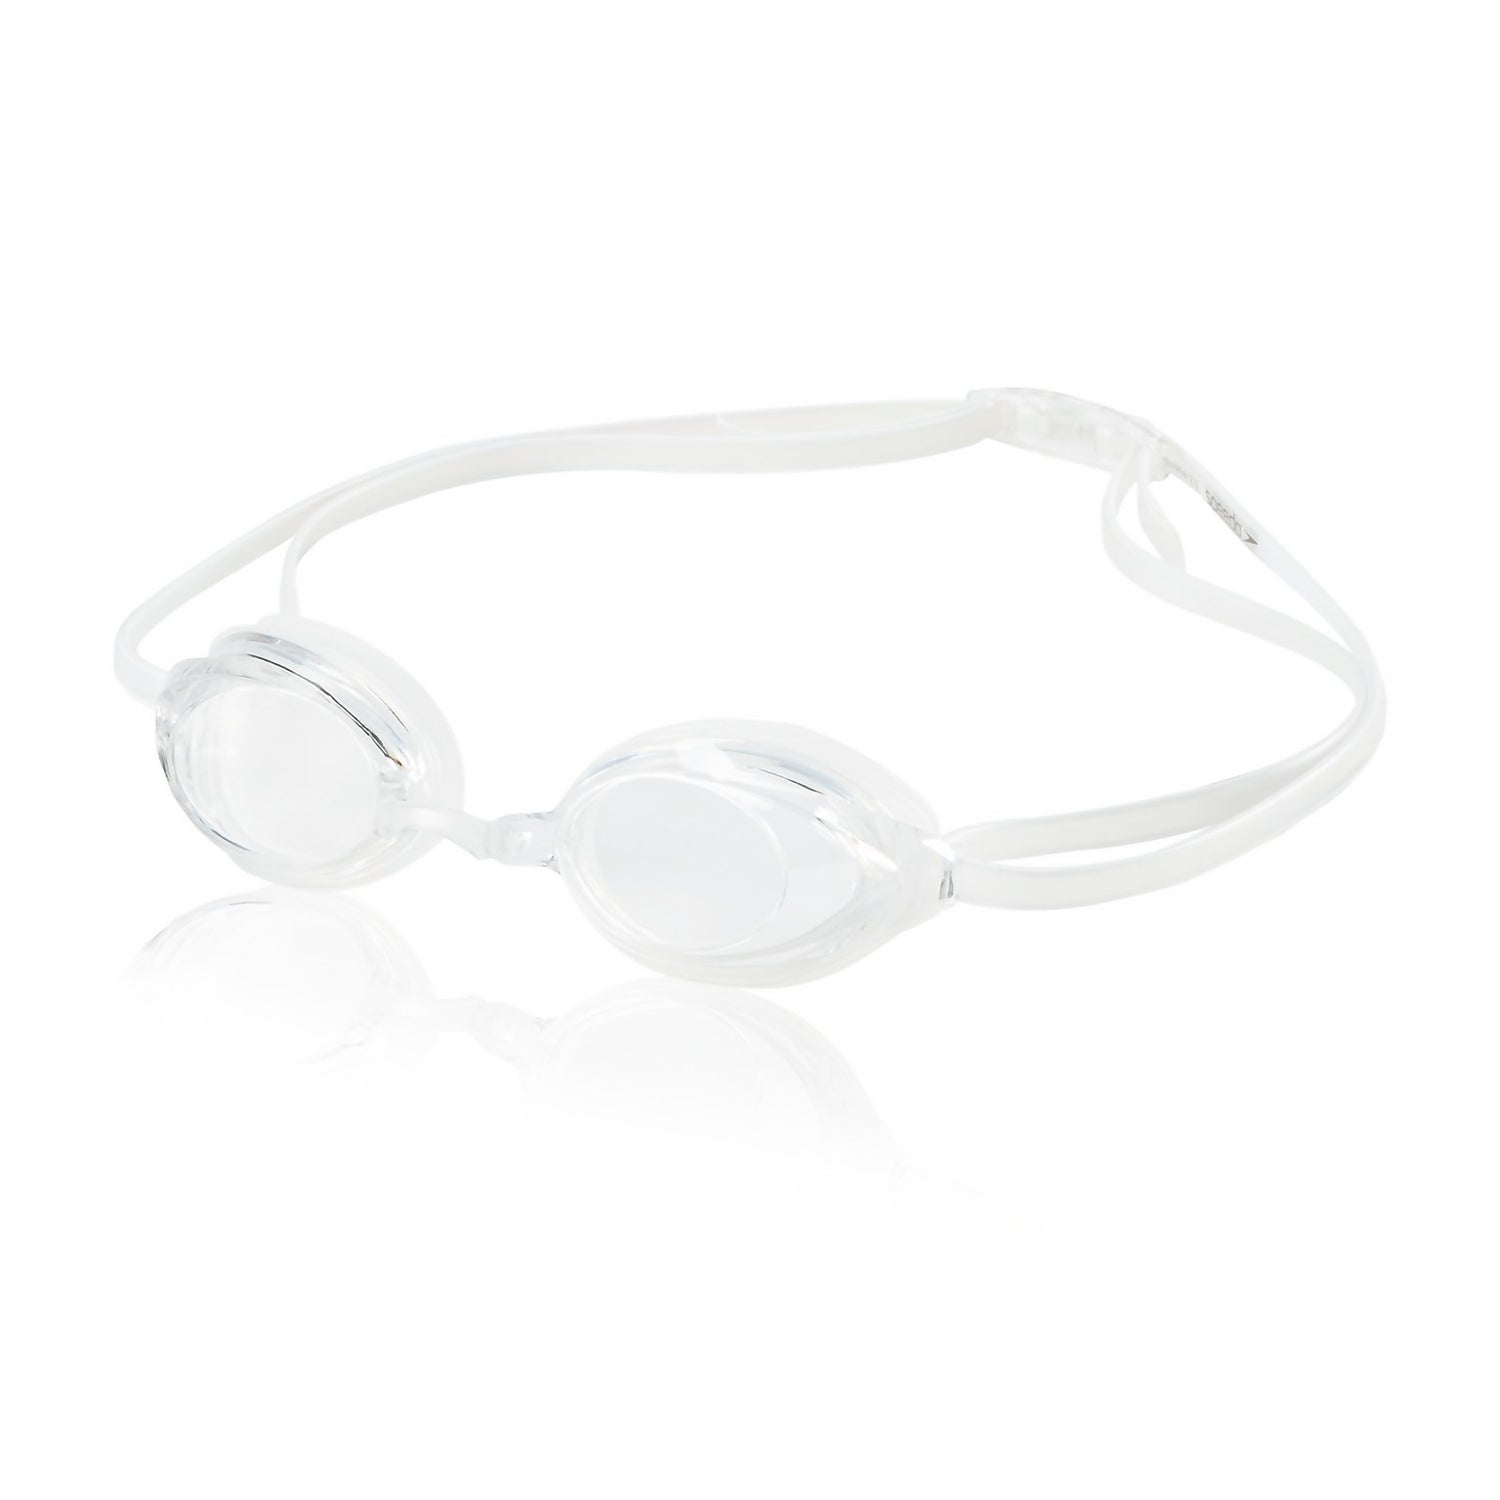 Speedo Anti-Fog Goggle Solution - One Size - White